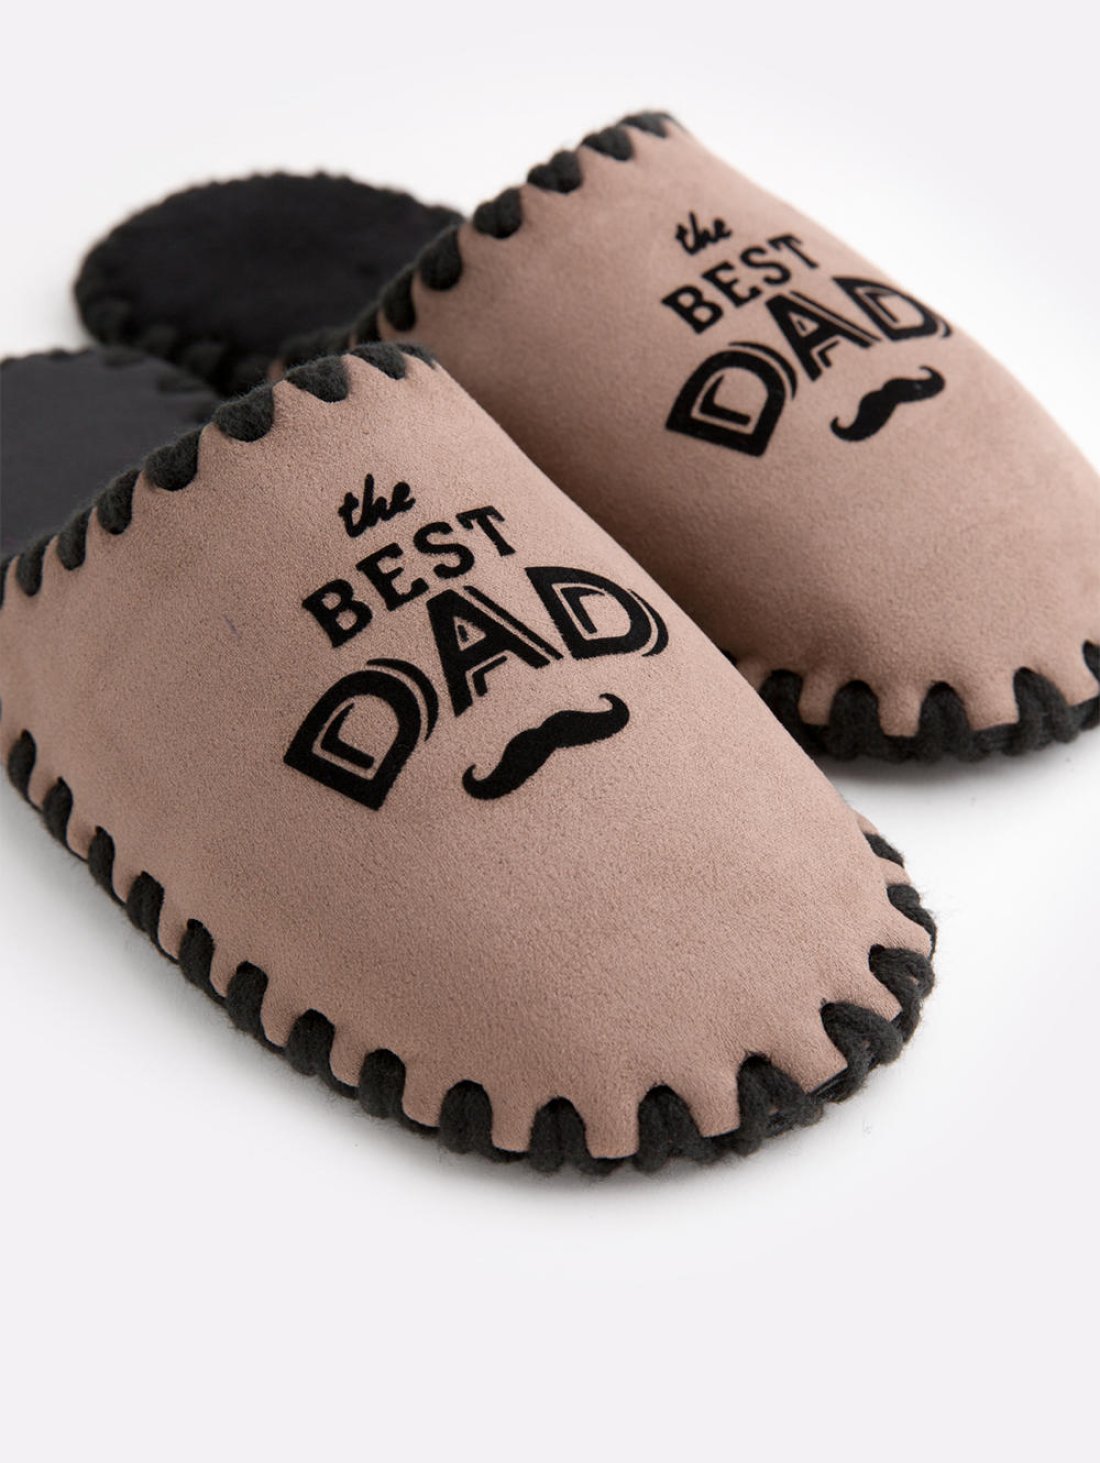 Закрытые мужские тапочки для дома с надписью Best Dad цвета мокко Family Story Фото-3